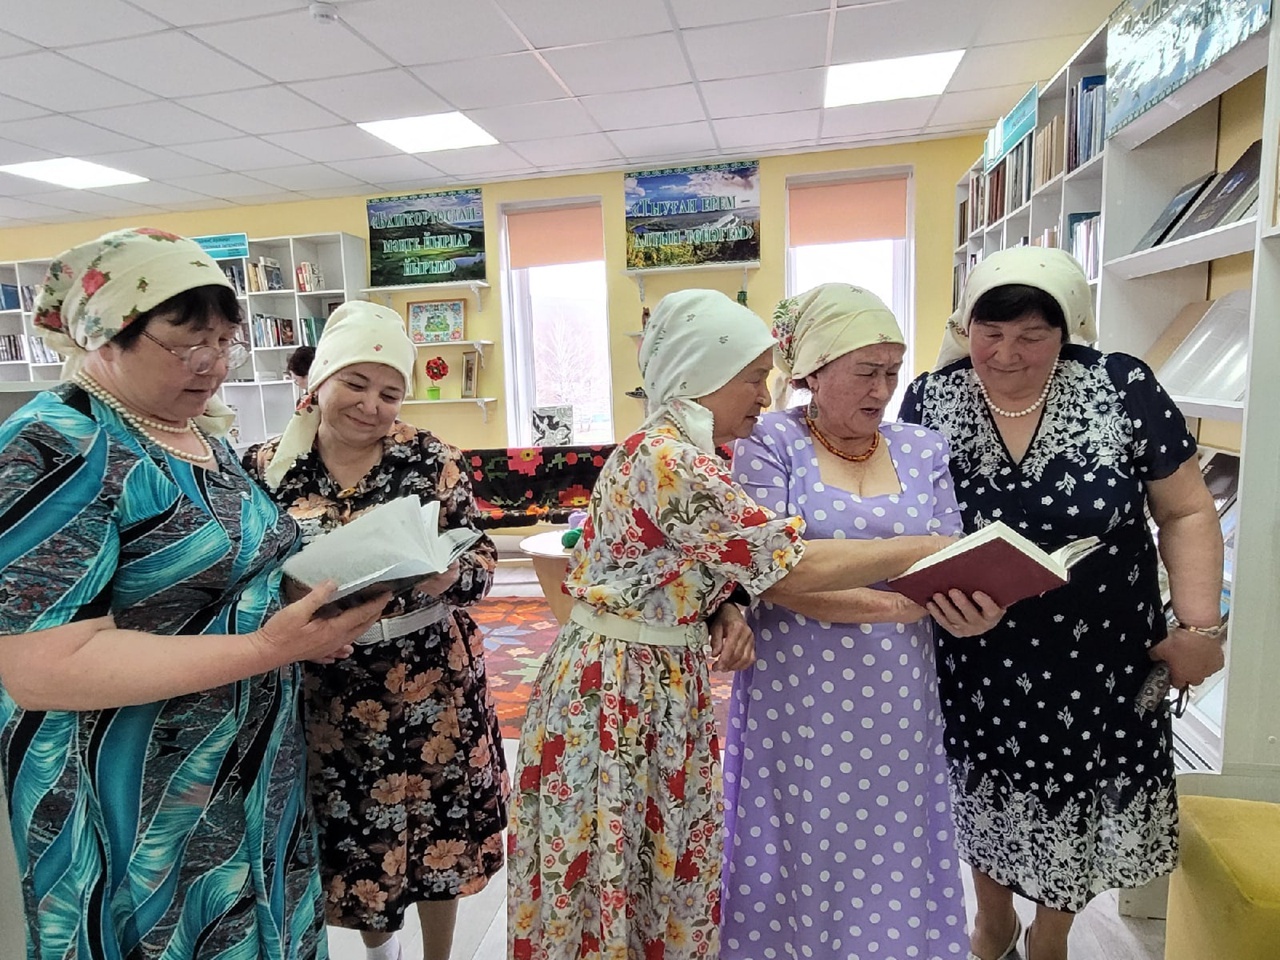 Обновлённая библиотека села Верхнеиткулово принимает гостей